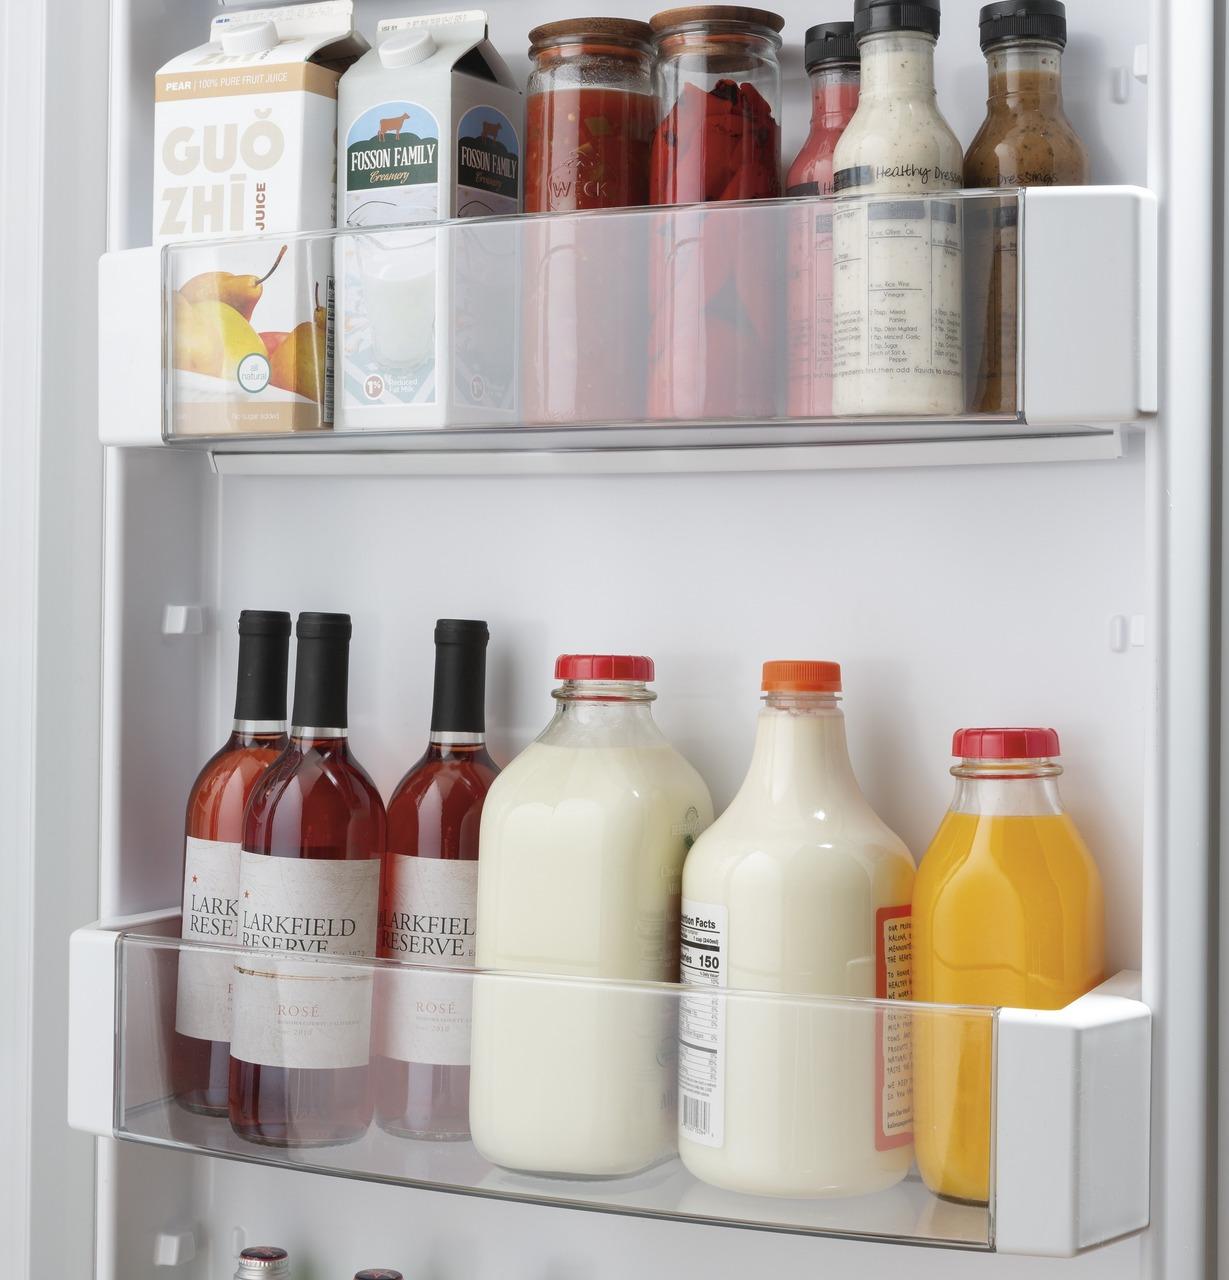 Caf(eback)™ 42" Smart Built-In Side-by-Side Refrigerator